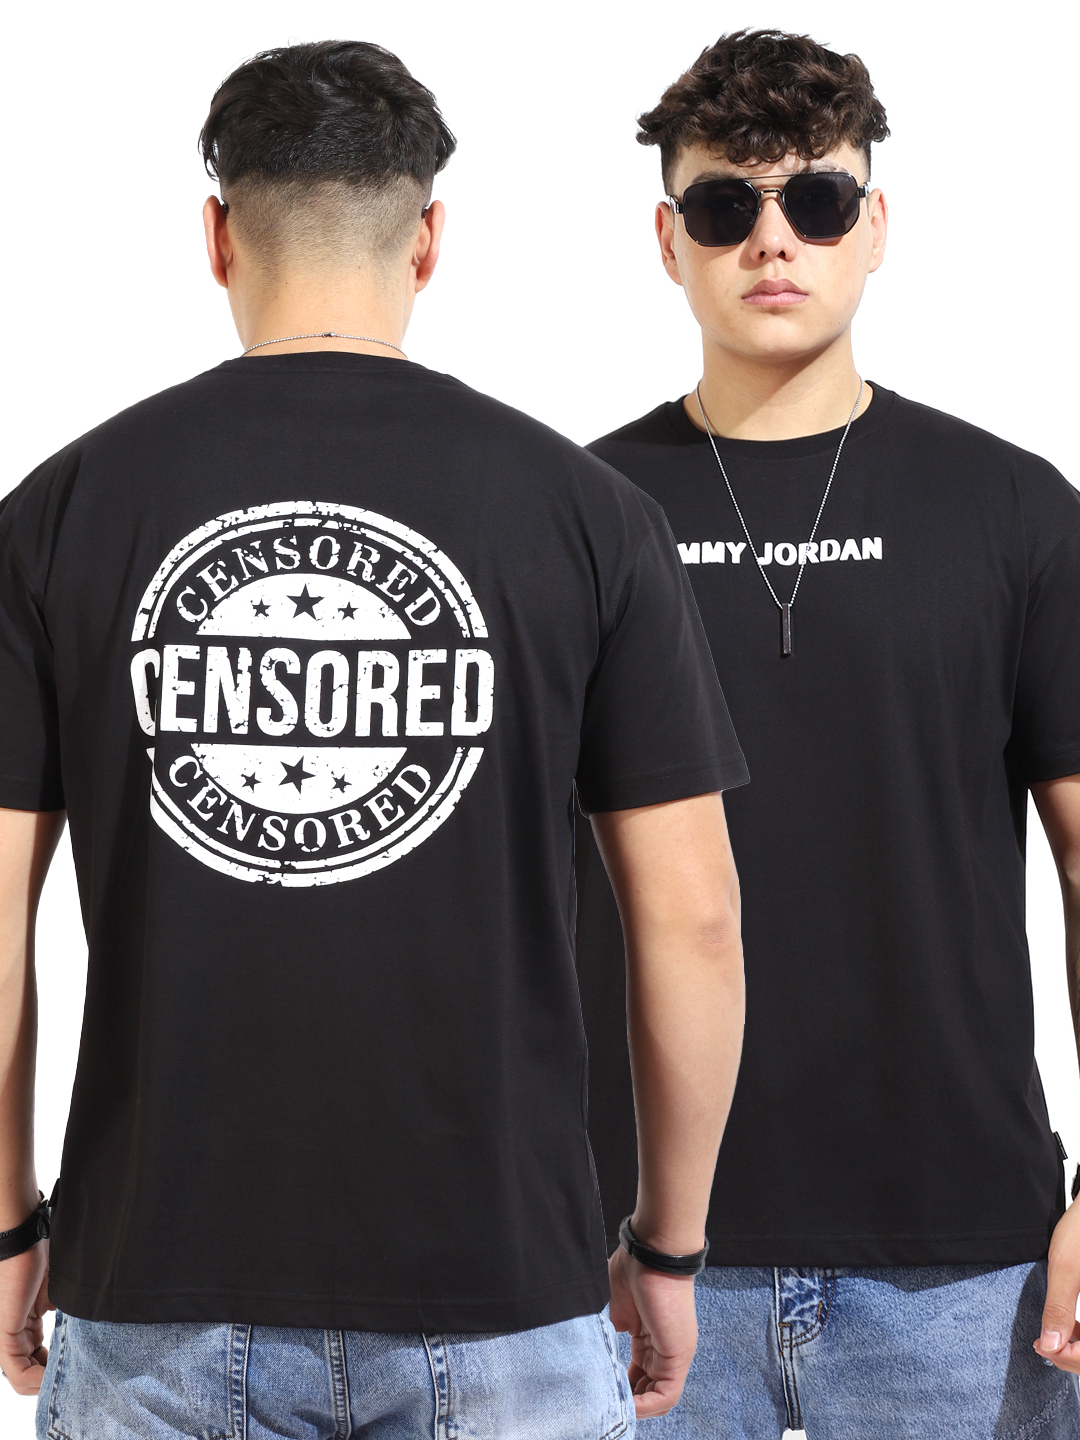 Censored Oversized Black T-Shirt